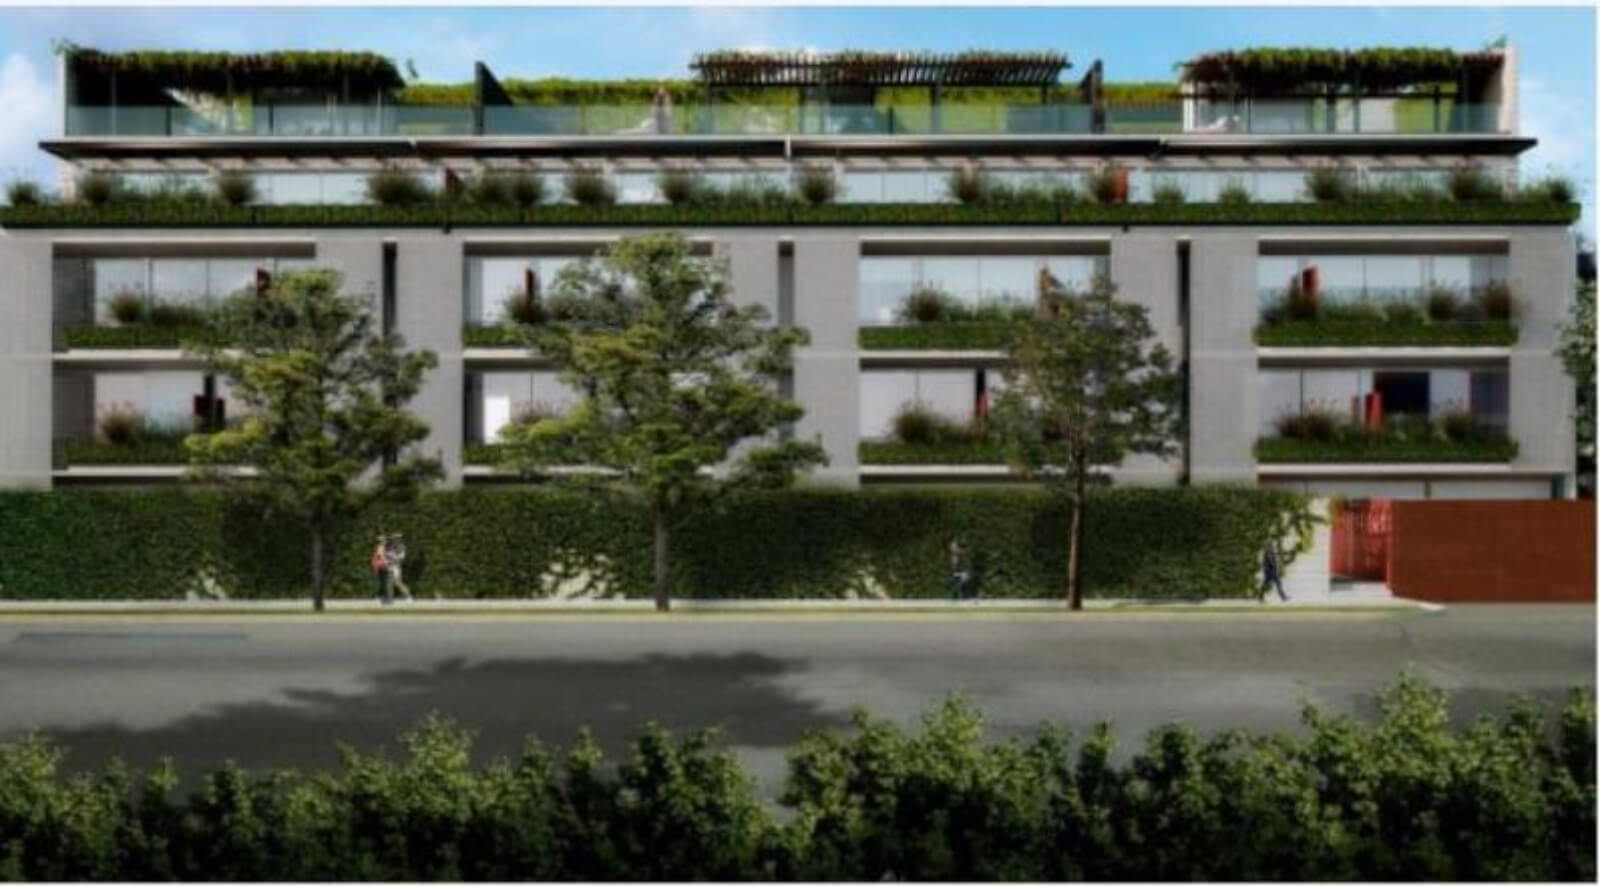 Condominio con terraza de 24 m2 vista al bosque de Chapultepec, cuarto de servicio con baño, altura de 3.10 metros, helipuerto, bar y restau